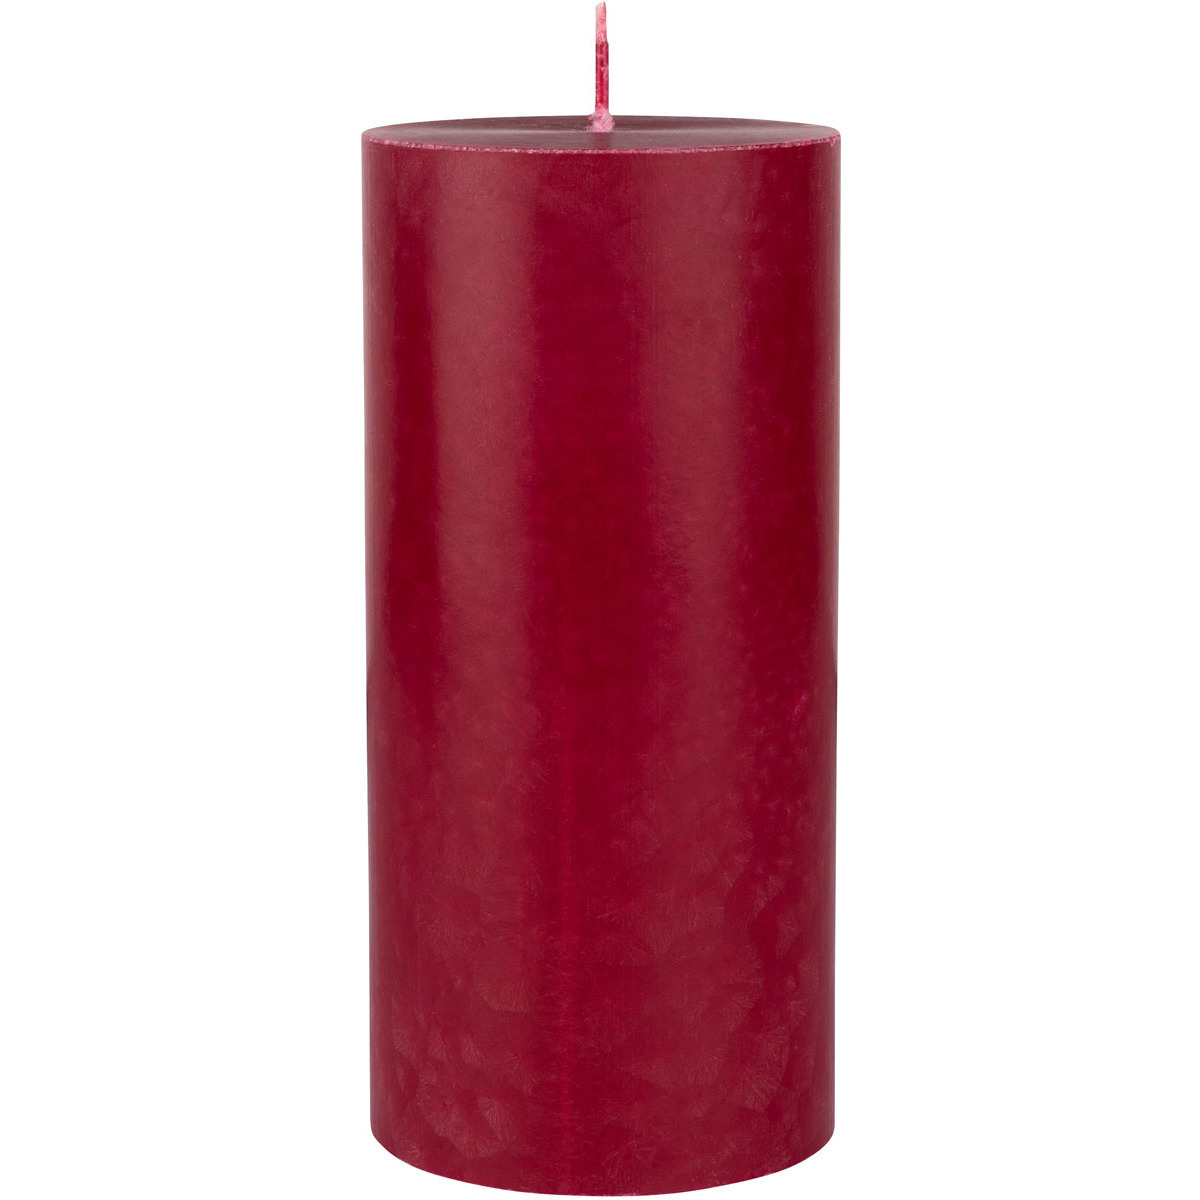 Rood bordeaux cilinderkaarsen/ stompkaarsen 15 x 7 cm 50 branduren